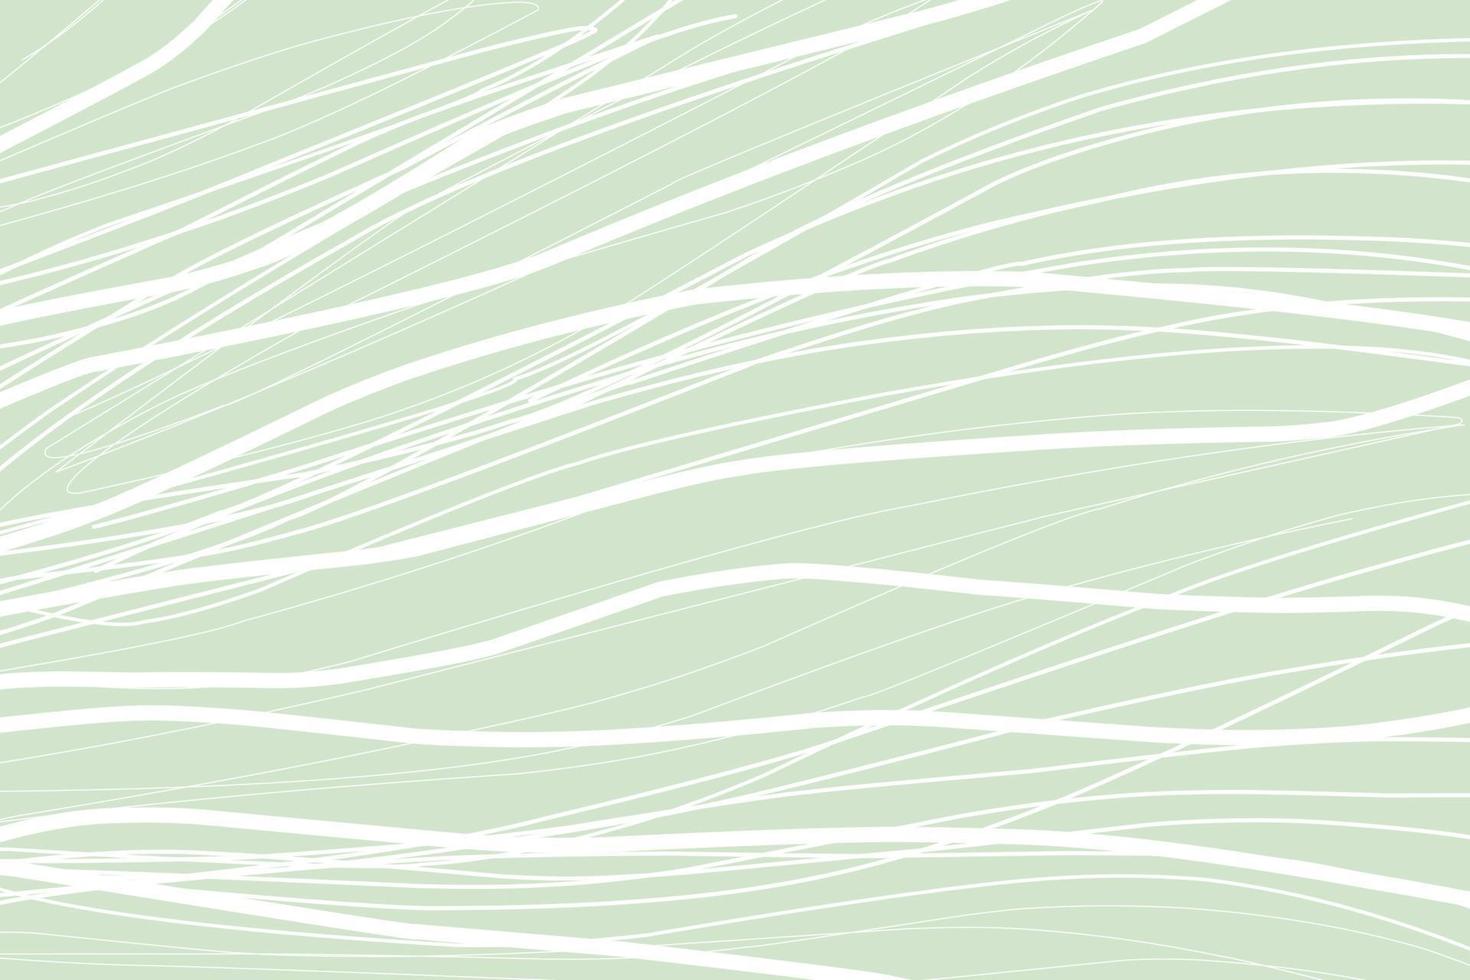 modelos elegantes com formas abstratas orgânicas e linhas em cores nude. fundo pastel em estilo minimalista. ilustração vetorial contemporânea vetor